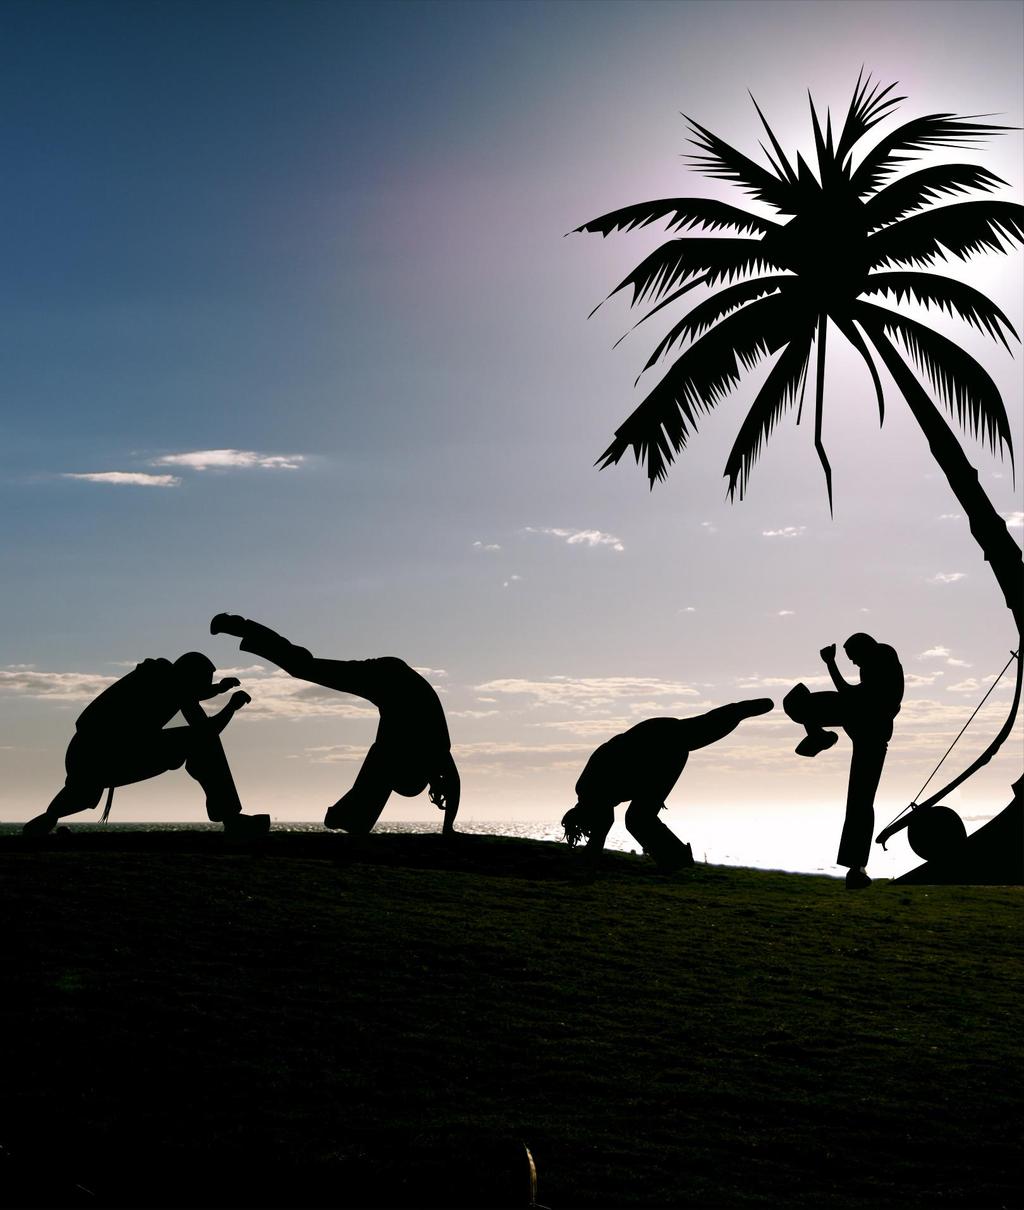 A capoeira é uma expressão cultural brasileira que mistura arte-marcial, esporte, cultura popular e música.